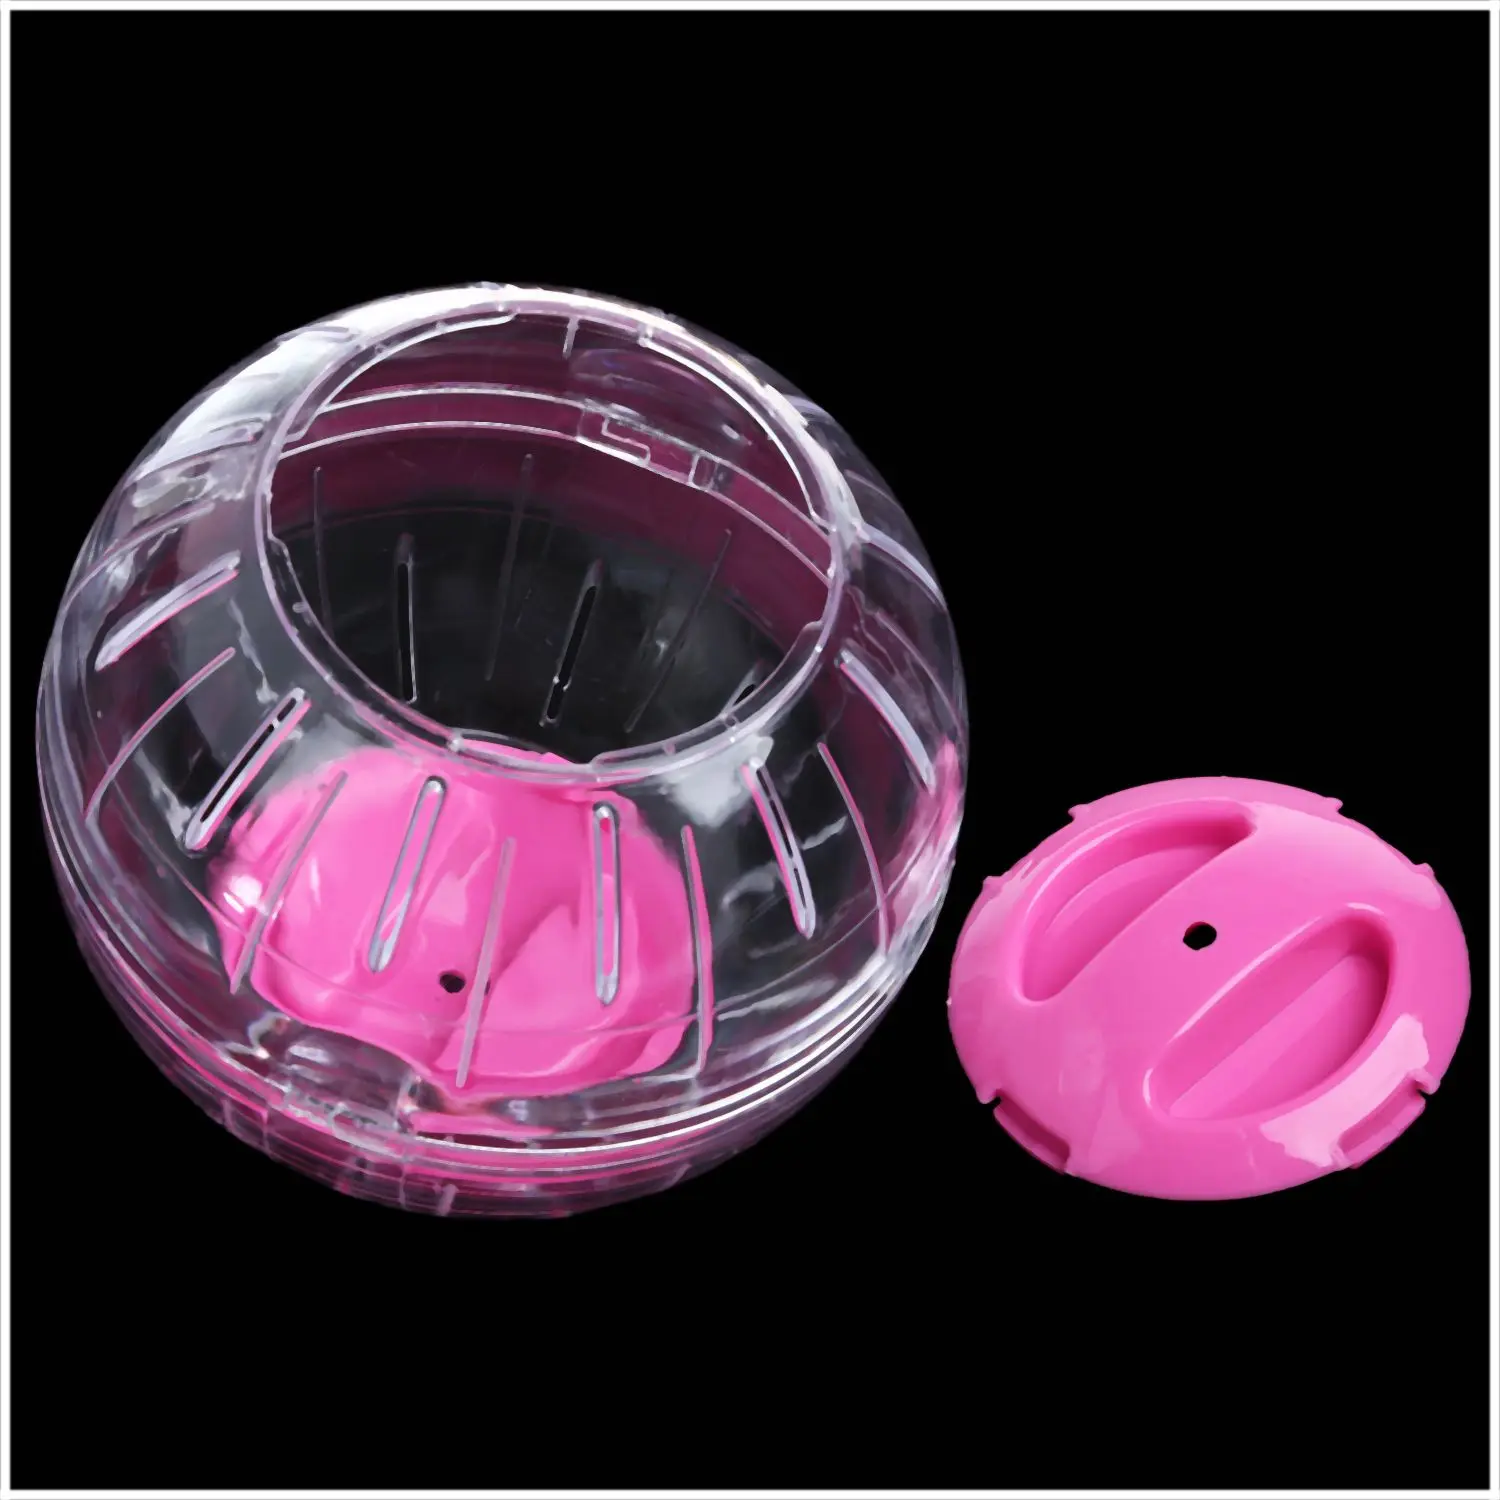 Мячик для упражнений в виде хомяка, Песчанка, игровая игрушка, прозрачный розовый, 12 см